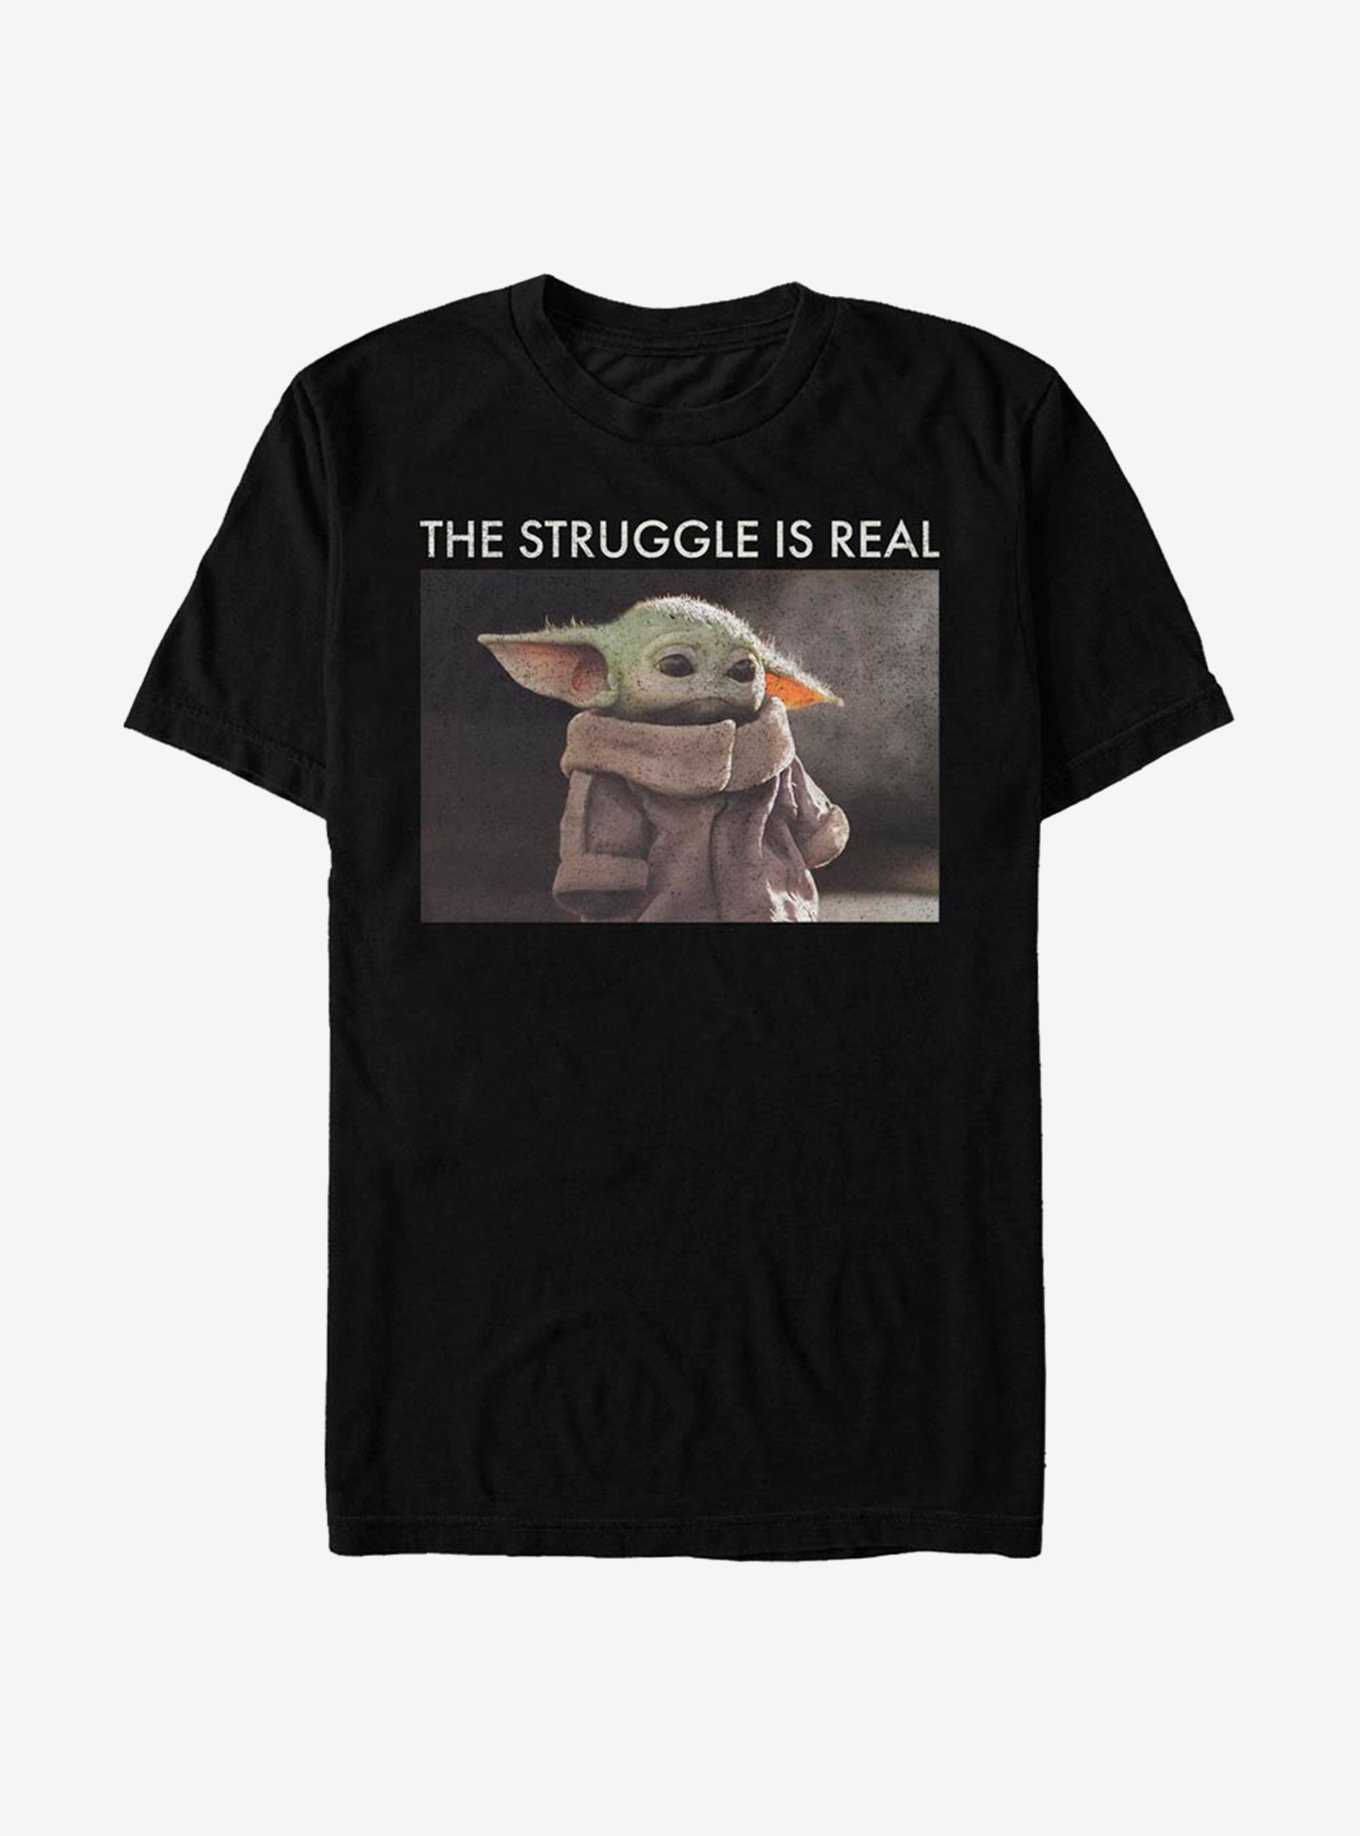 Star Wars The Mandalorian The Child The Struggle Meme T-Shirt, , hi-res